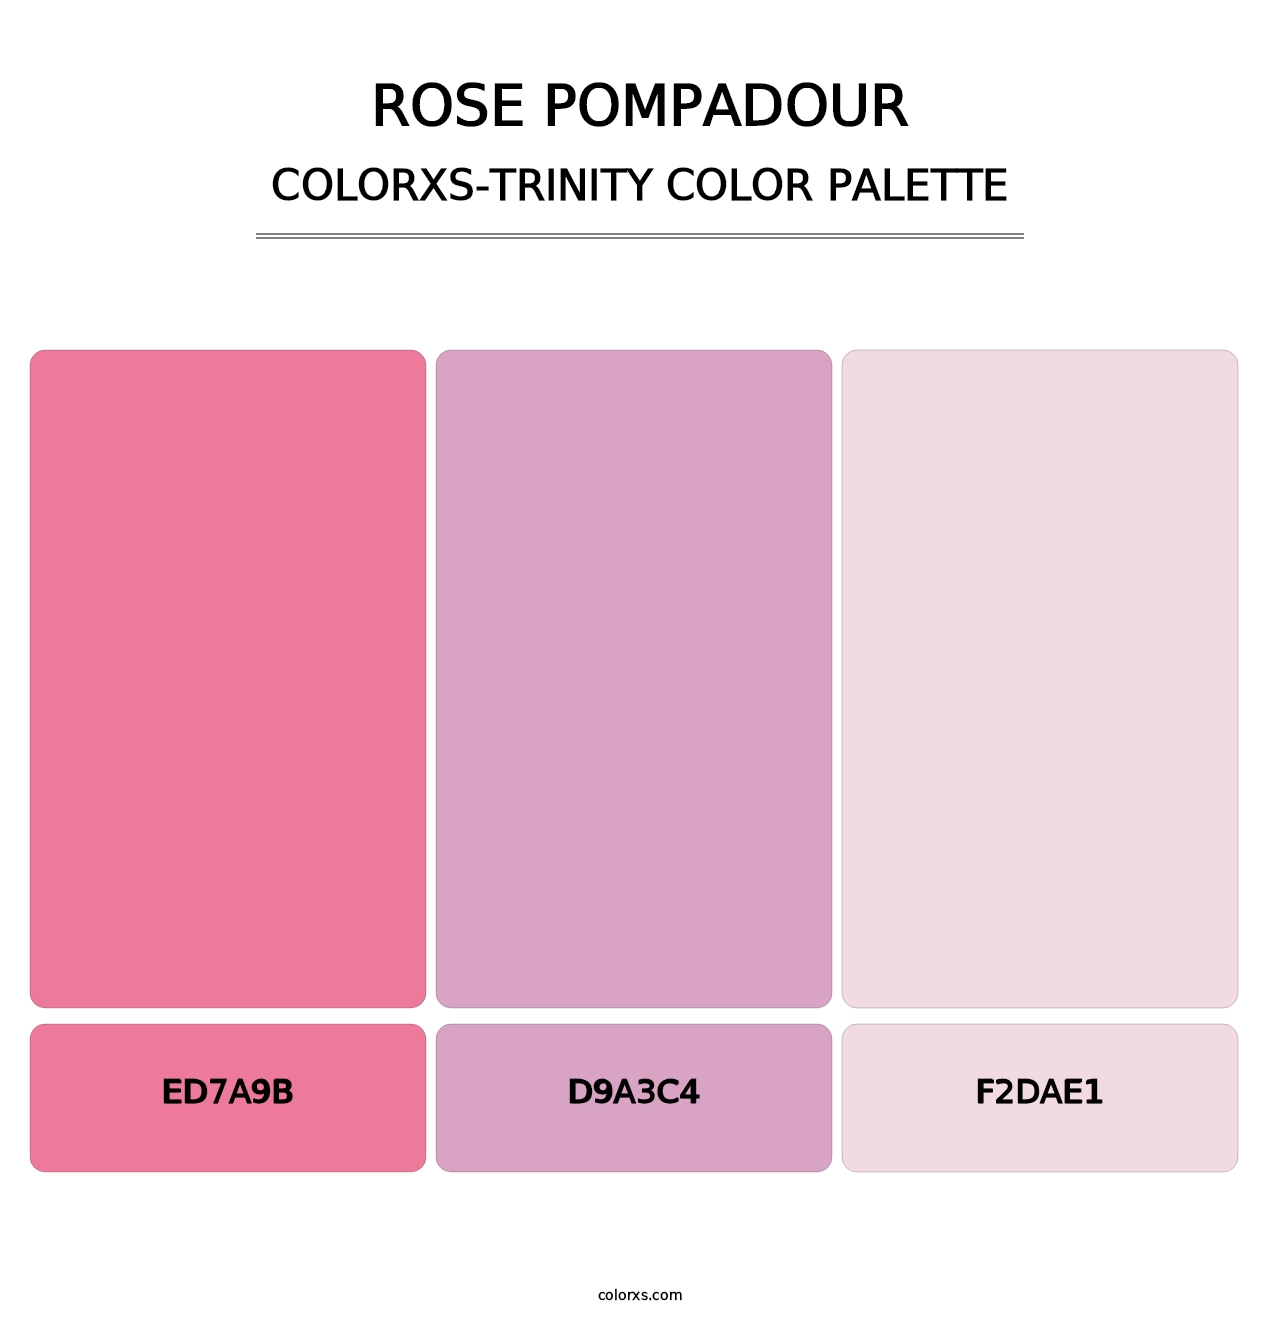 Rose Pompadour - Colorxs Trinity Palette